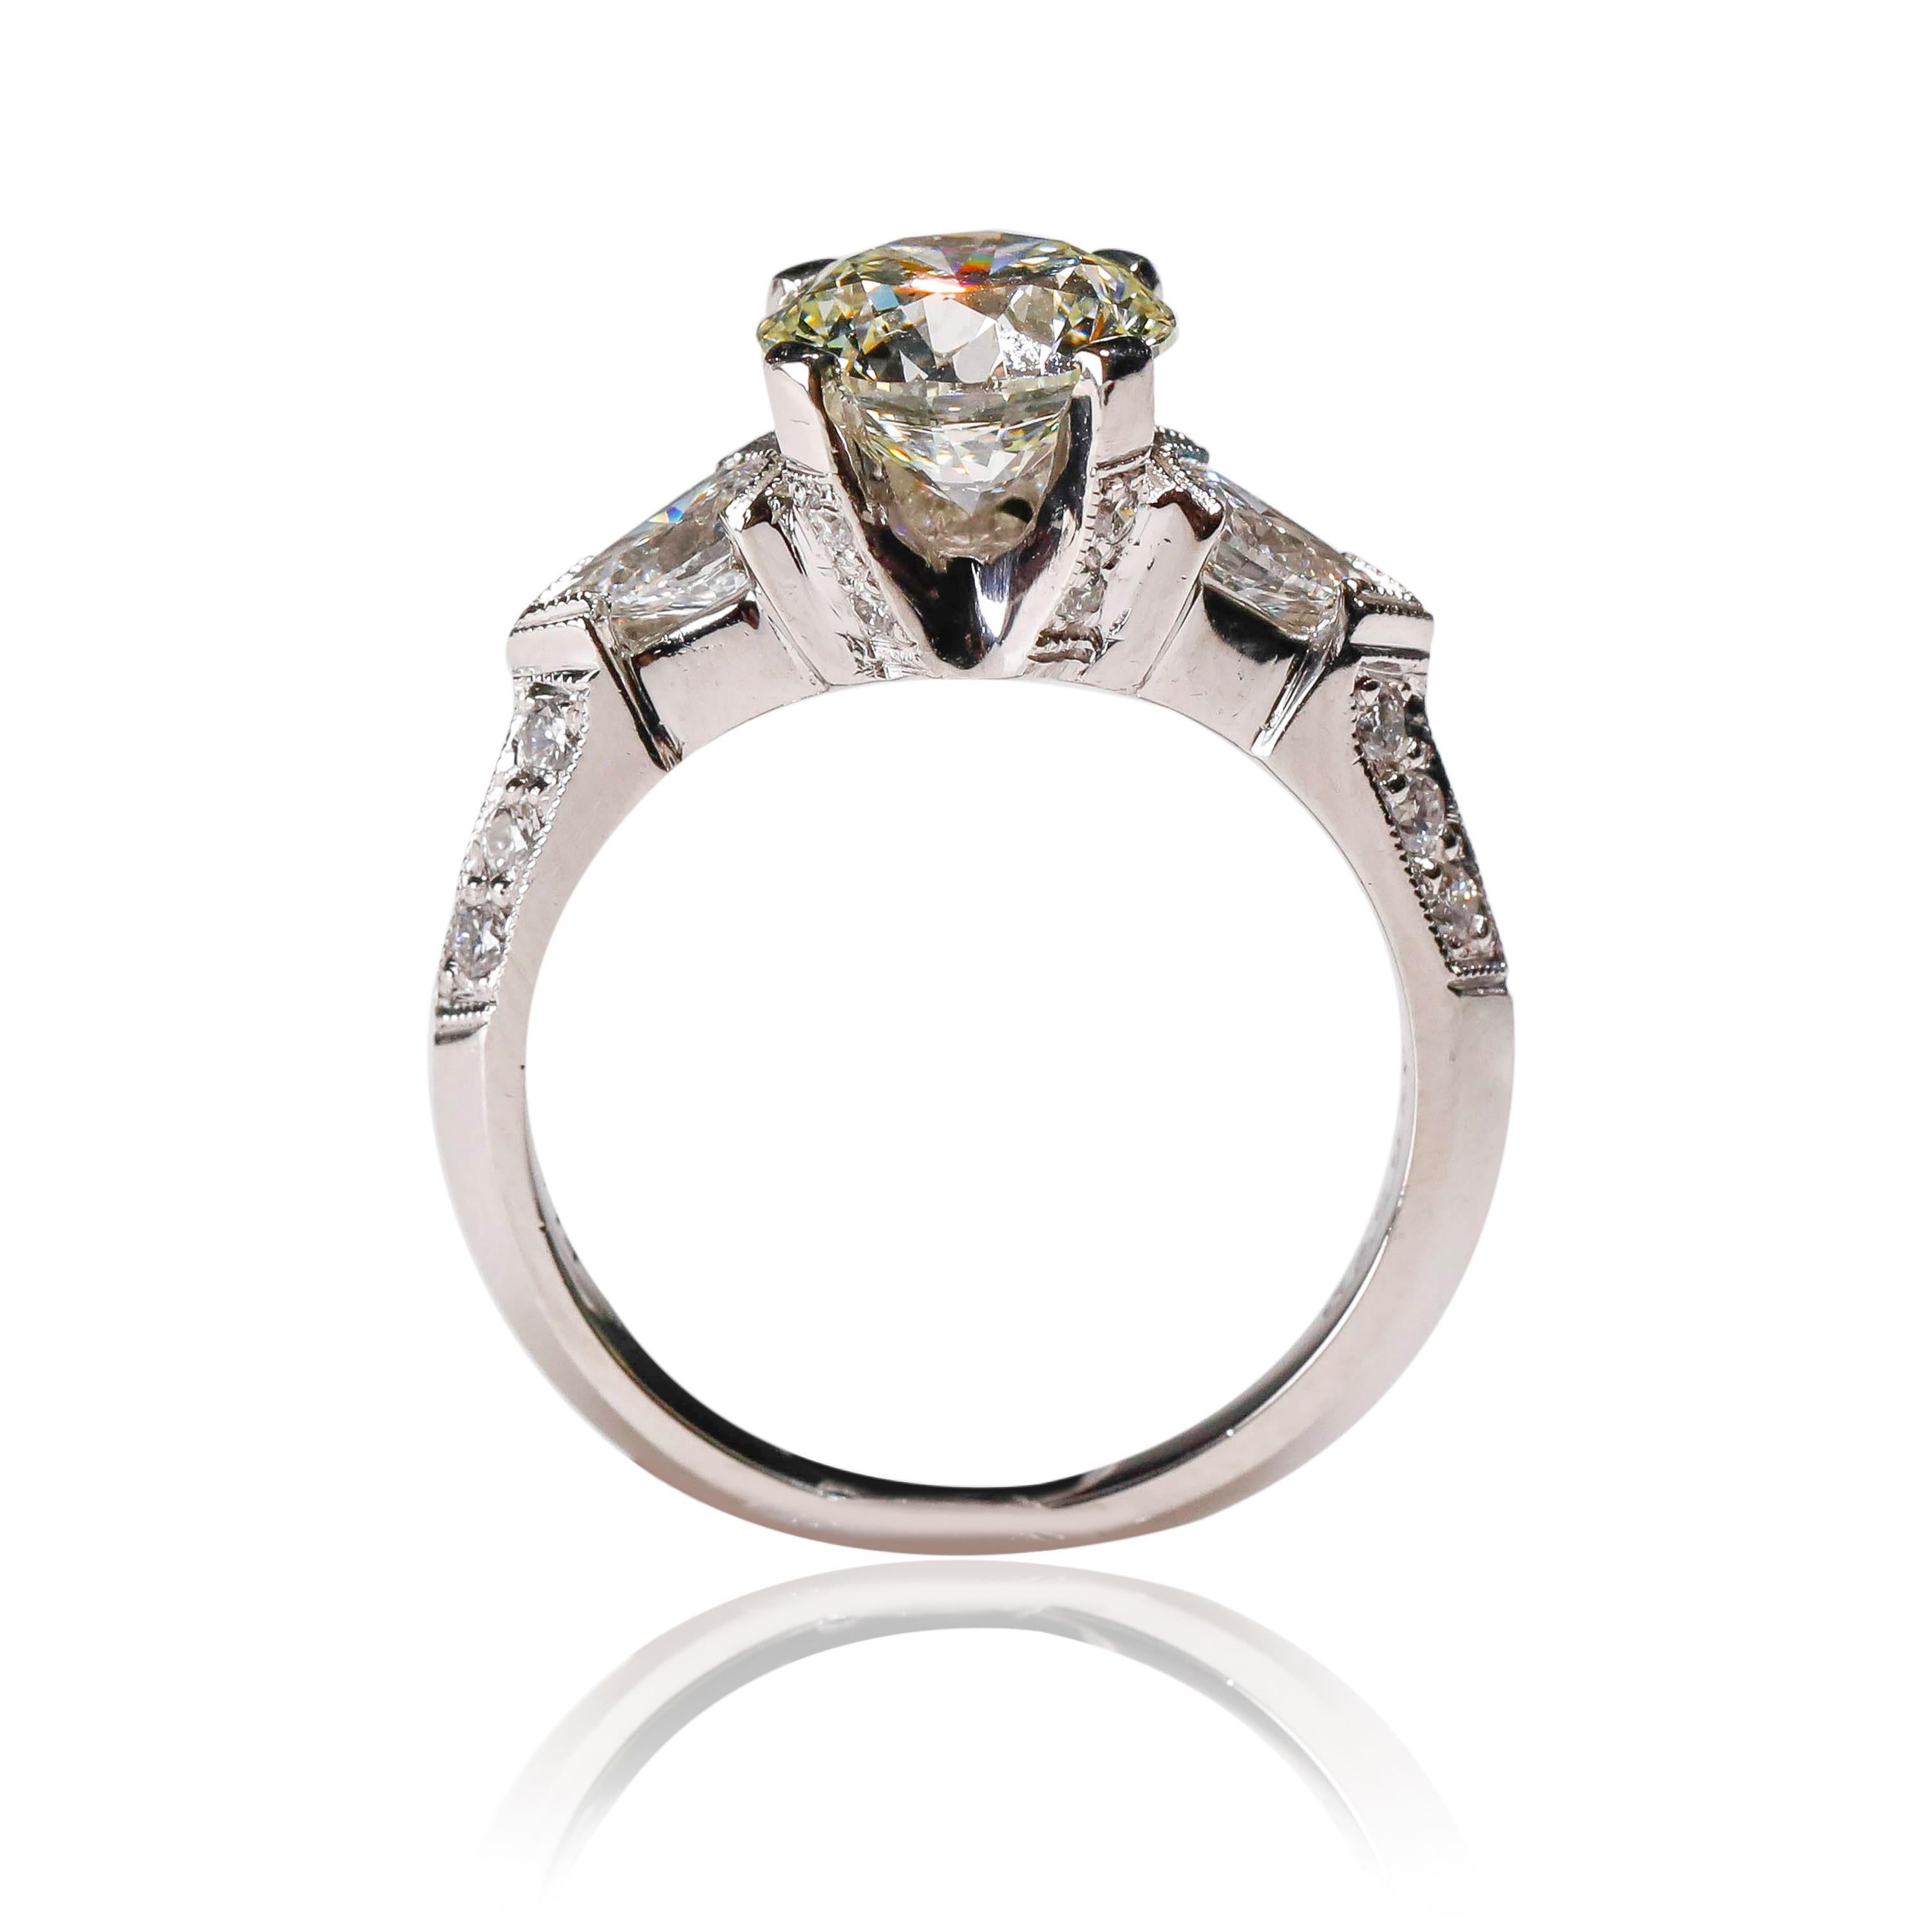 Tacori Platin 3 Karat runder birnenförmiger Diamant-Hochzeitsring

Dieser in jeder Hinsicht luxuriöse Ring ist ein atemberaubendes Beispiel dafür, wie Sie sich fühlen sollten, wenn Sie ihn tragen. Verfügt über 0,83 ct schimmernde Diamanten zusammen